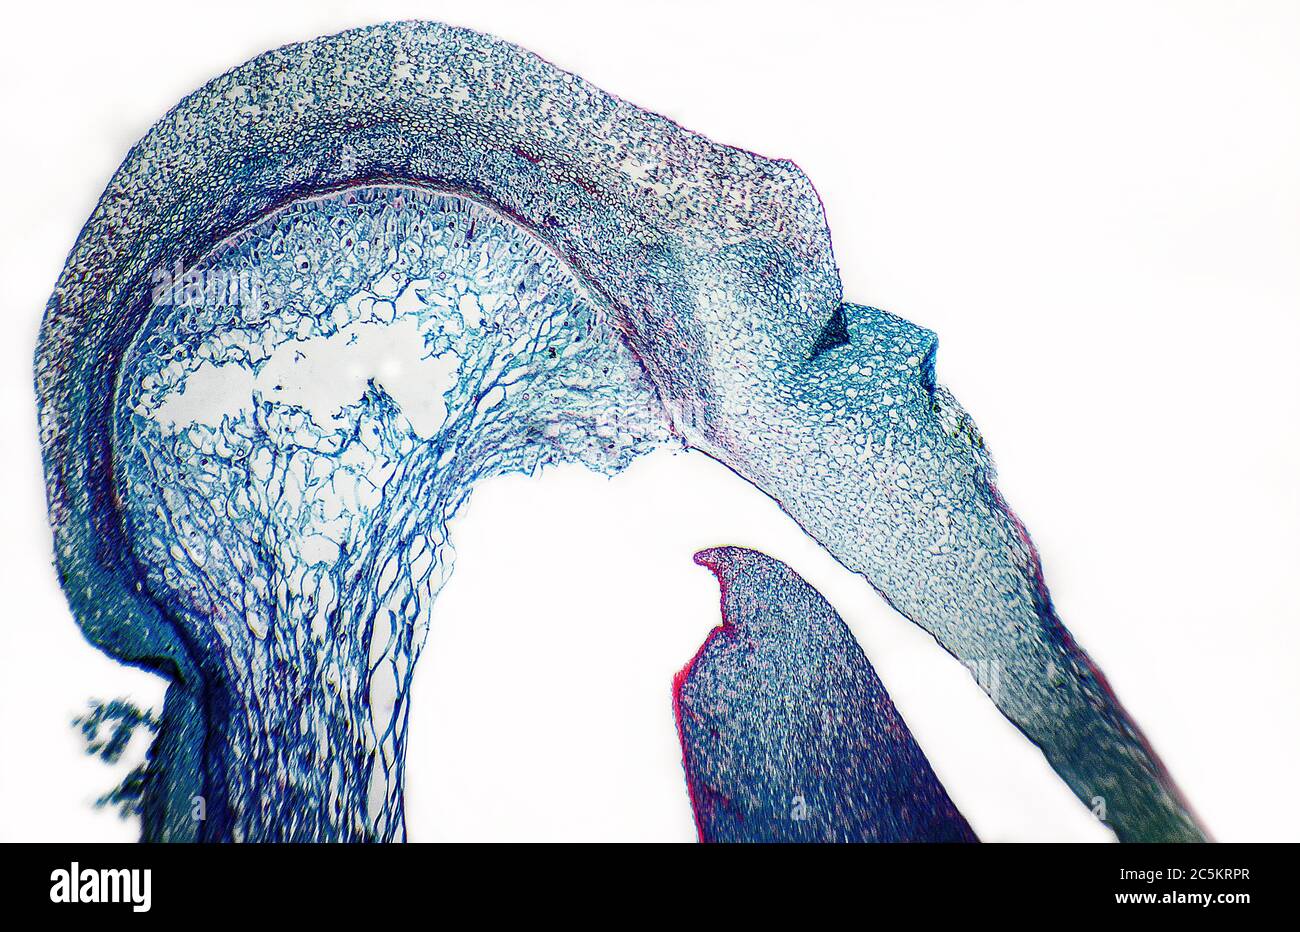 Cellules animales microscopiques avec une forme de visage surréaliste Banque D'Images